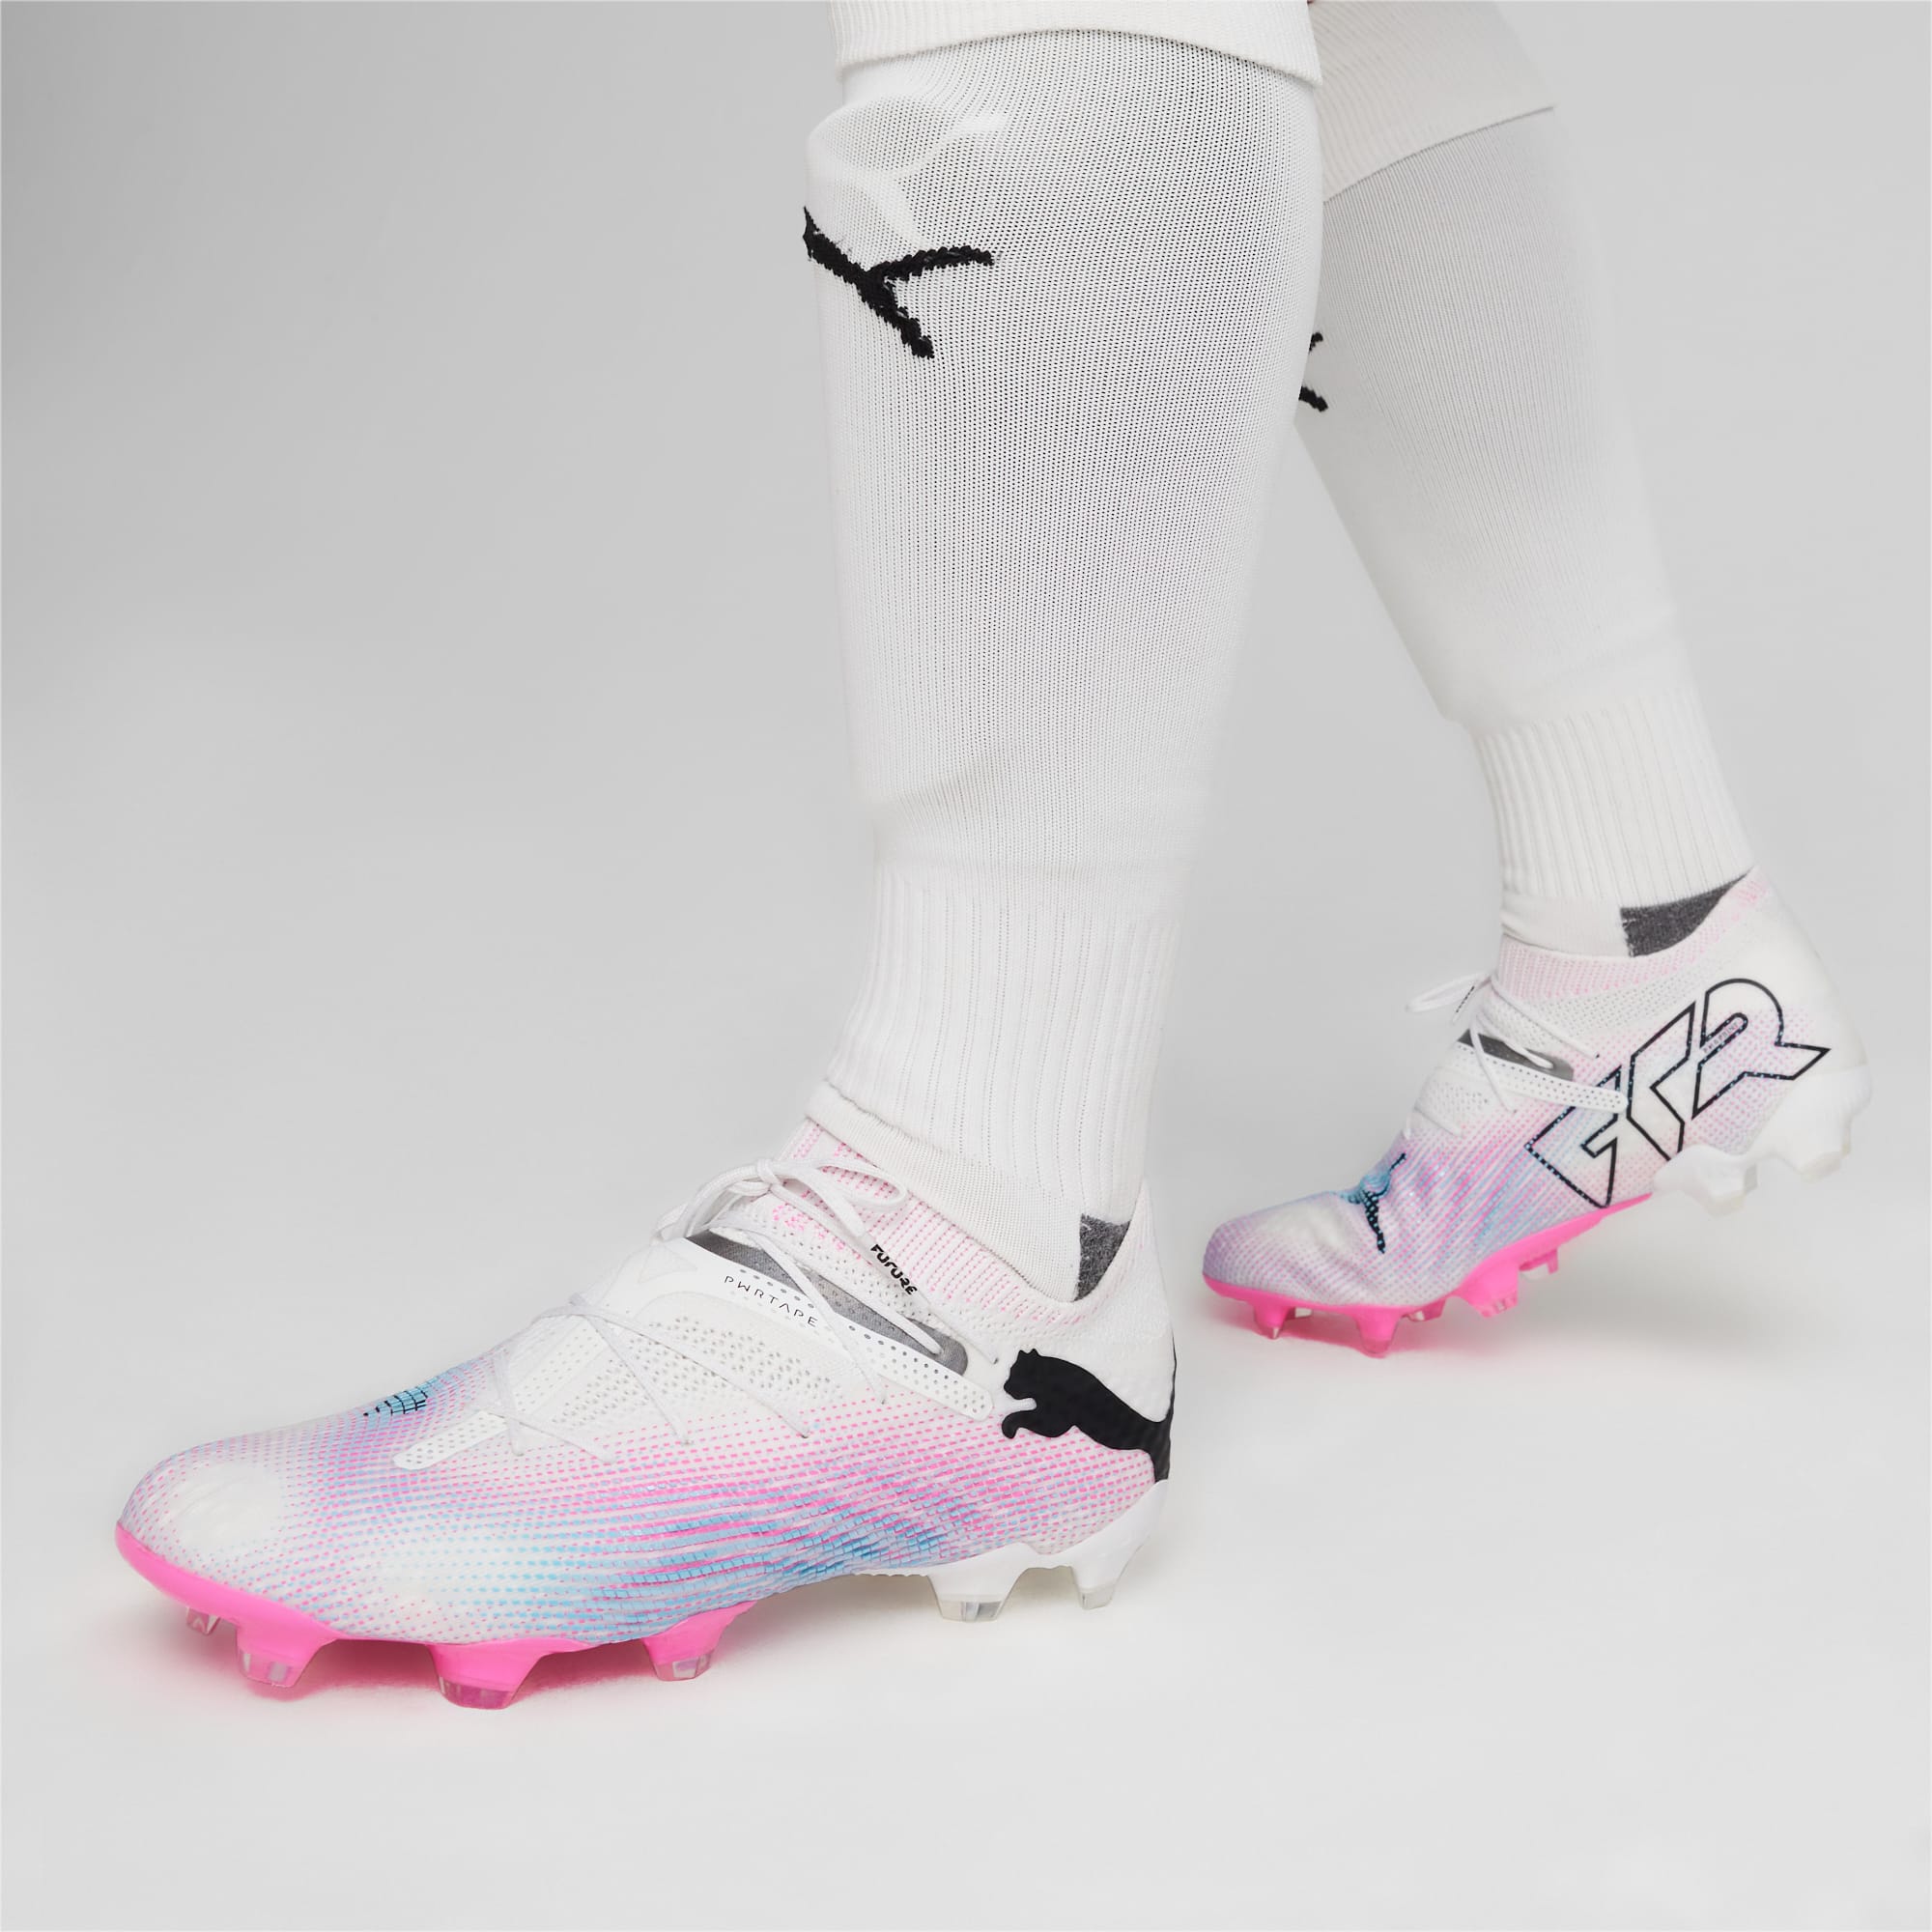 PUMA Chaussures De Football FUTURE 7 ULTIMATE FG/AG Pour Homme, Blanc/Rose/Noir